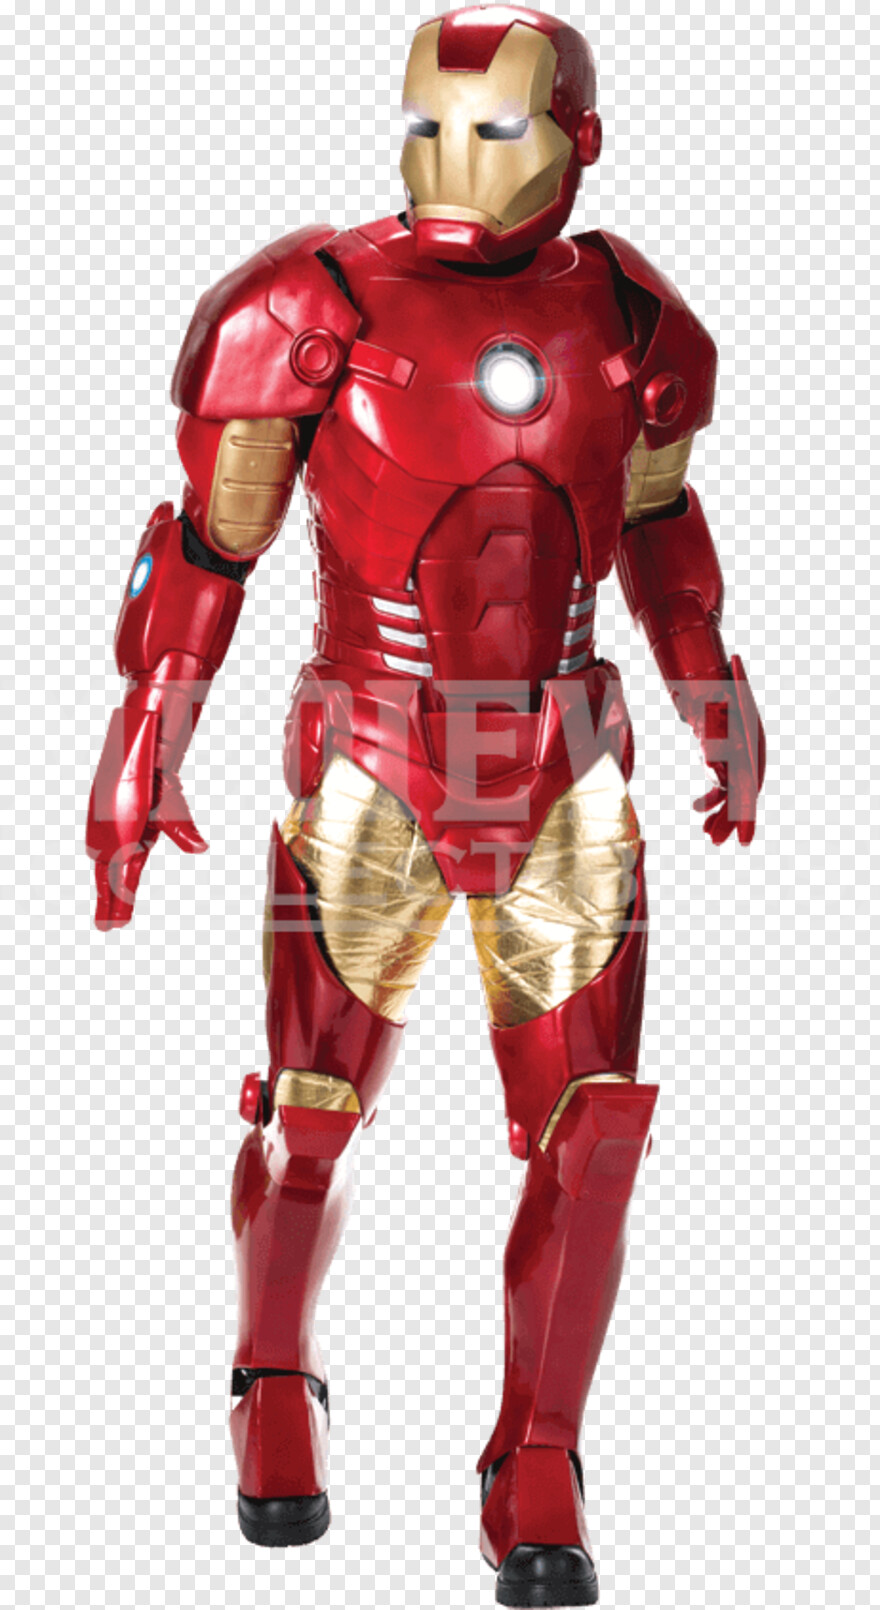  Iron Man Logo, Iron Man, Silhouette Man, Iron Man Flying, Man Walking Silhouette, Spider Man Homecoming